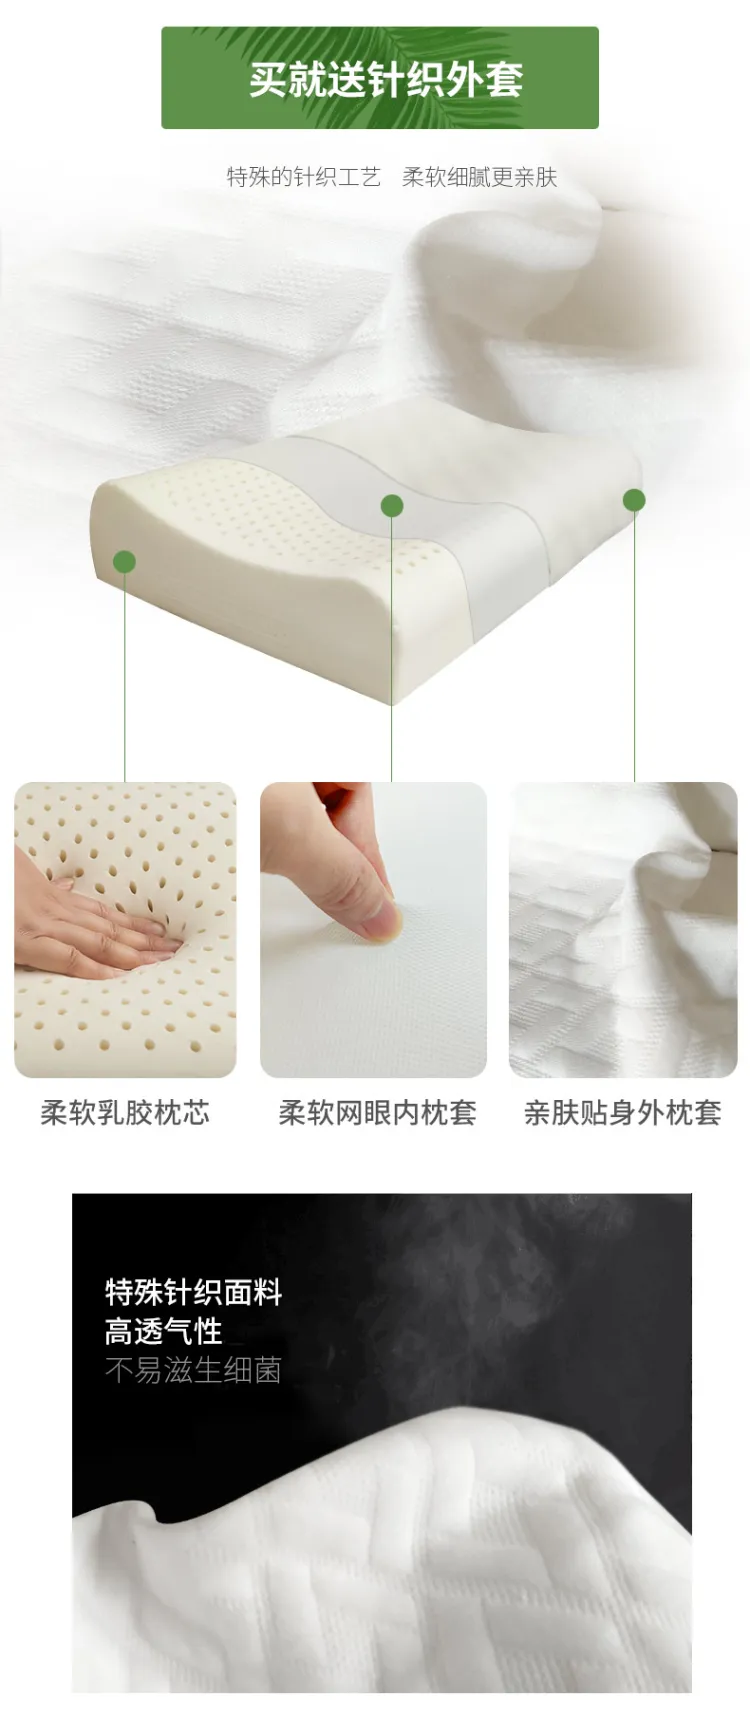 黛富妮 乳胶枕泰国原装进口护颈枕单只装(图11)